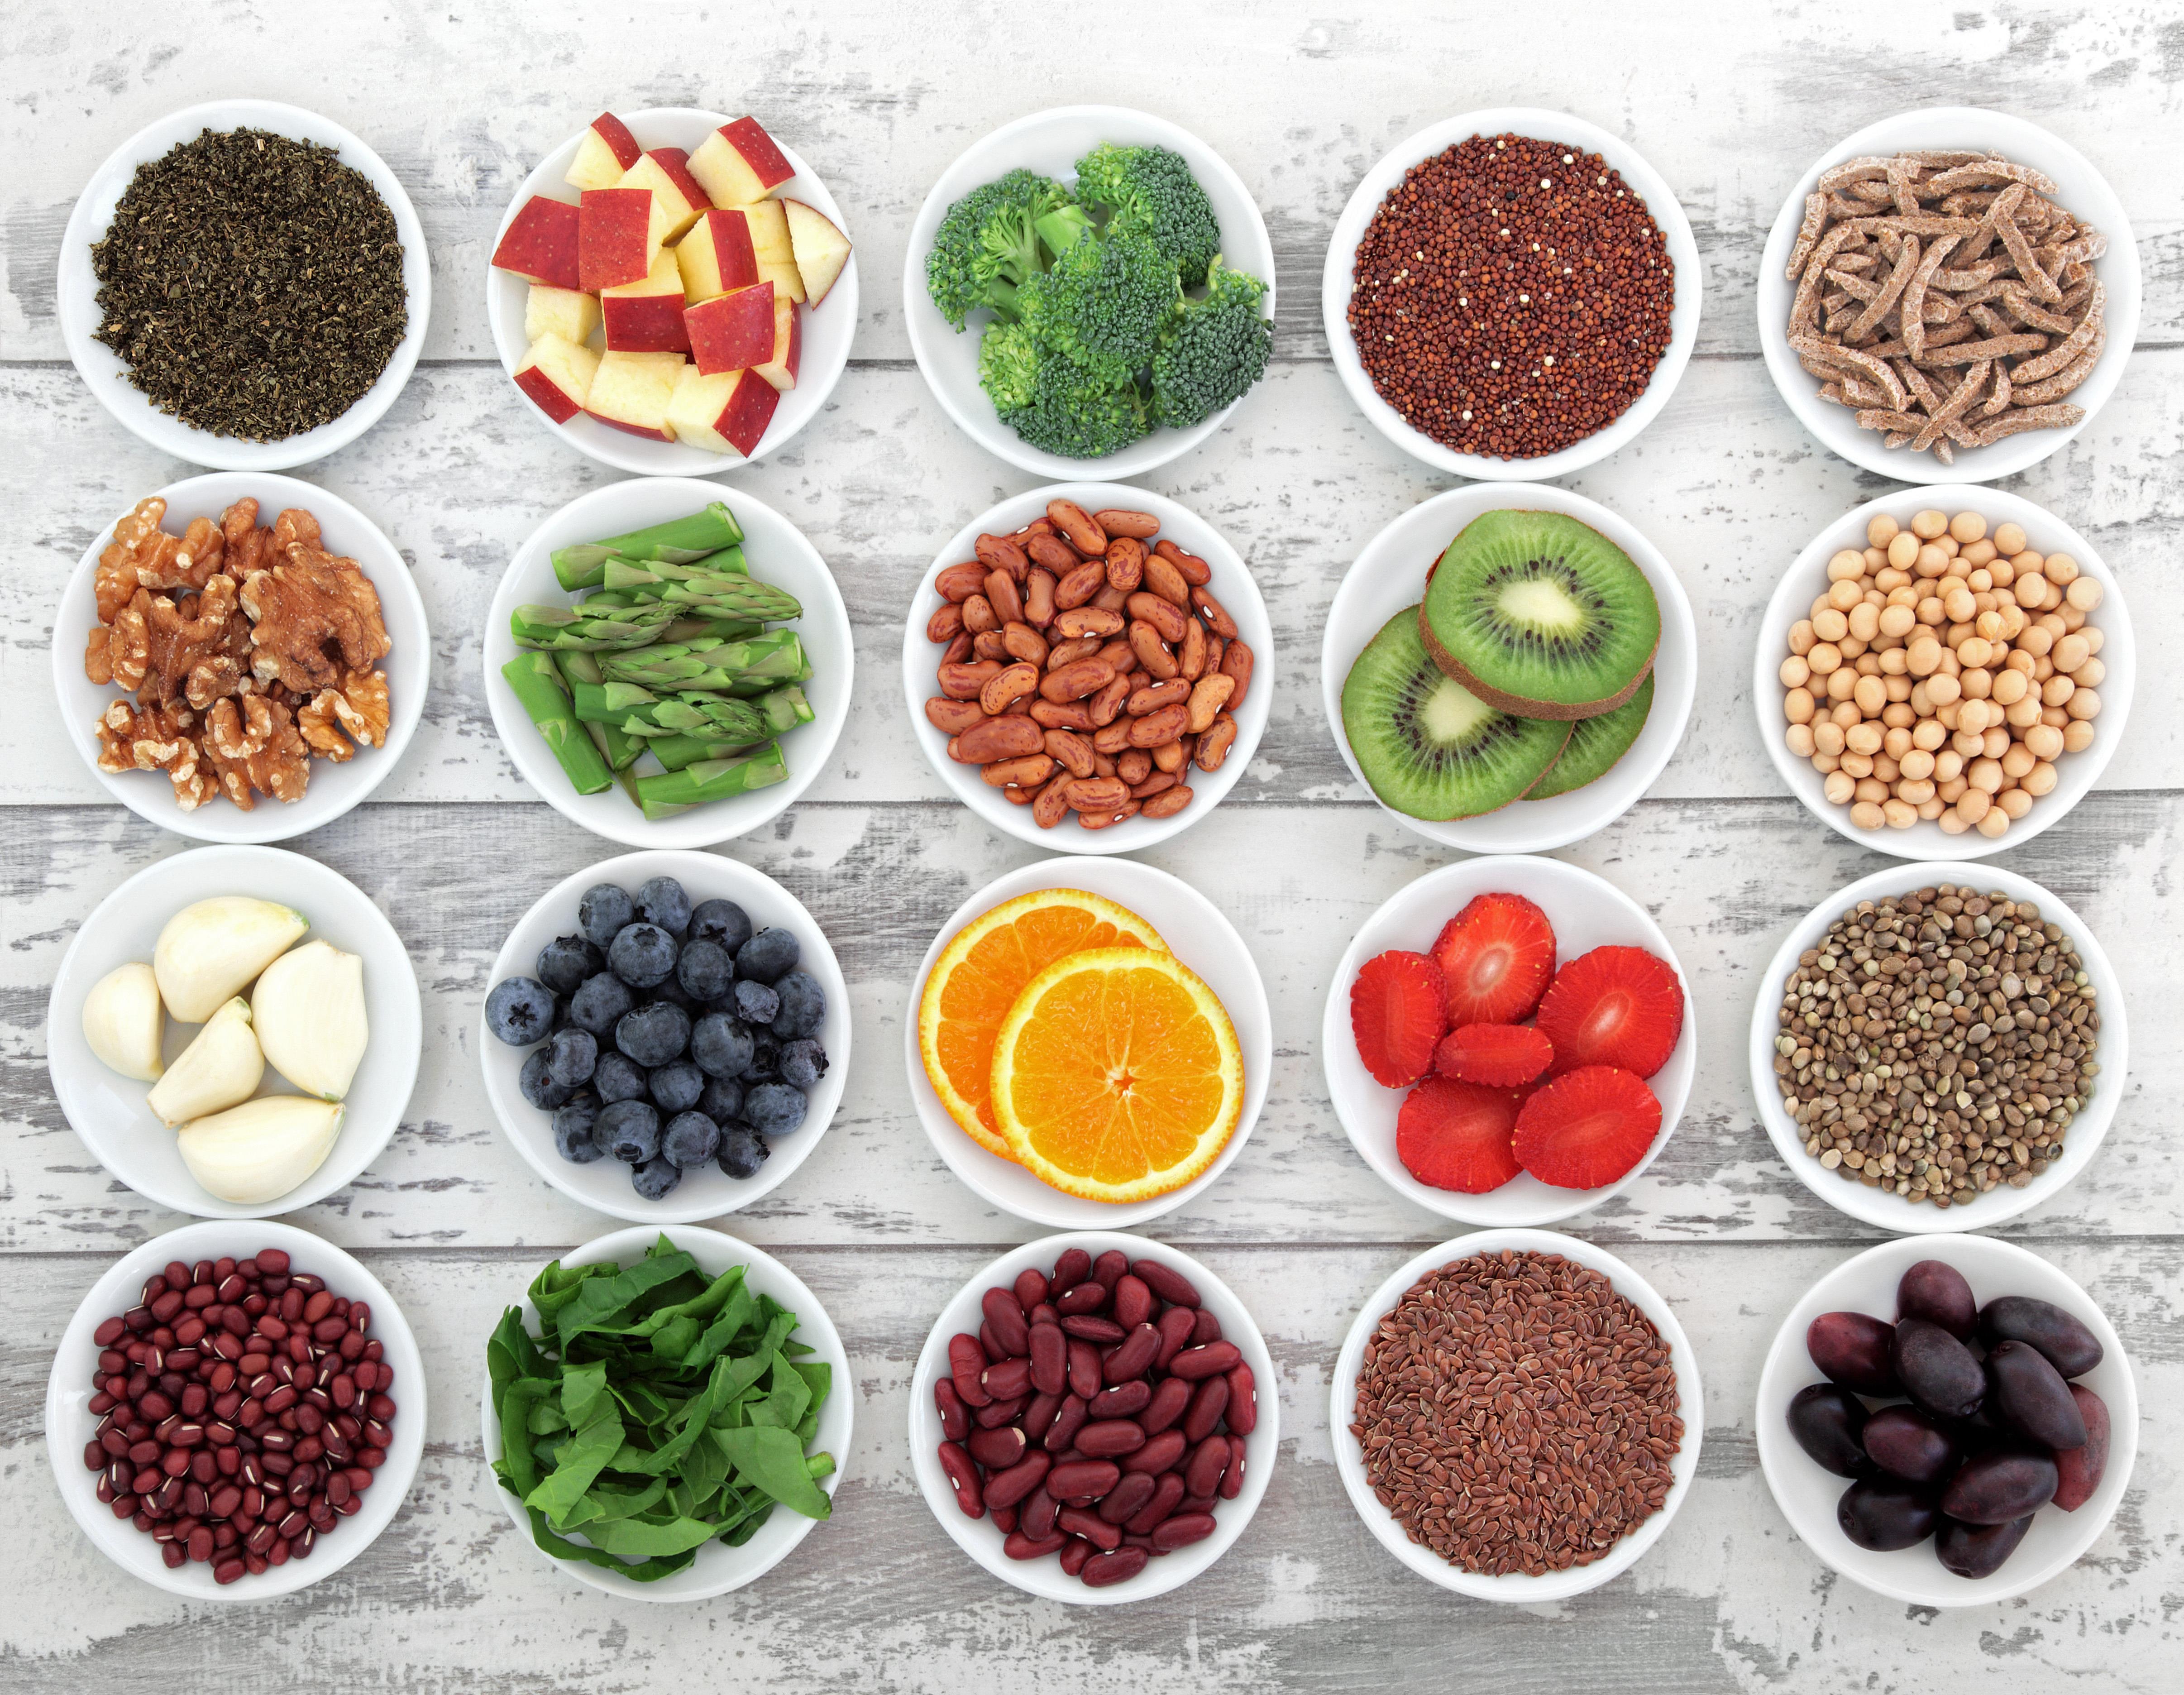 Съестные продукты. Продукты. Полезные продукты. Природные пищевые добавки. Антиоксиданты в овощах и фруктах.